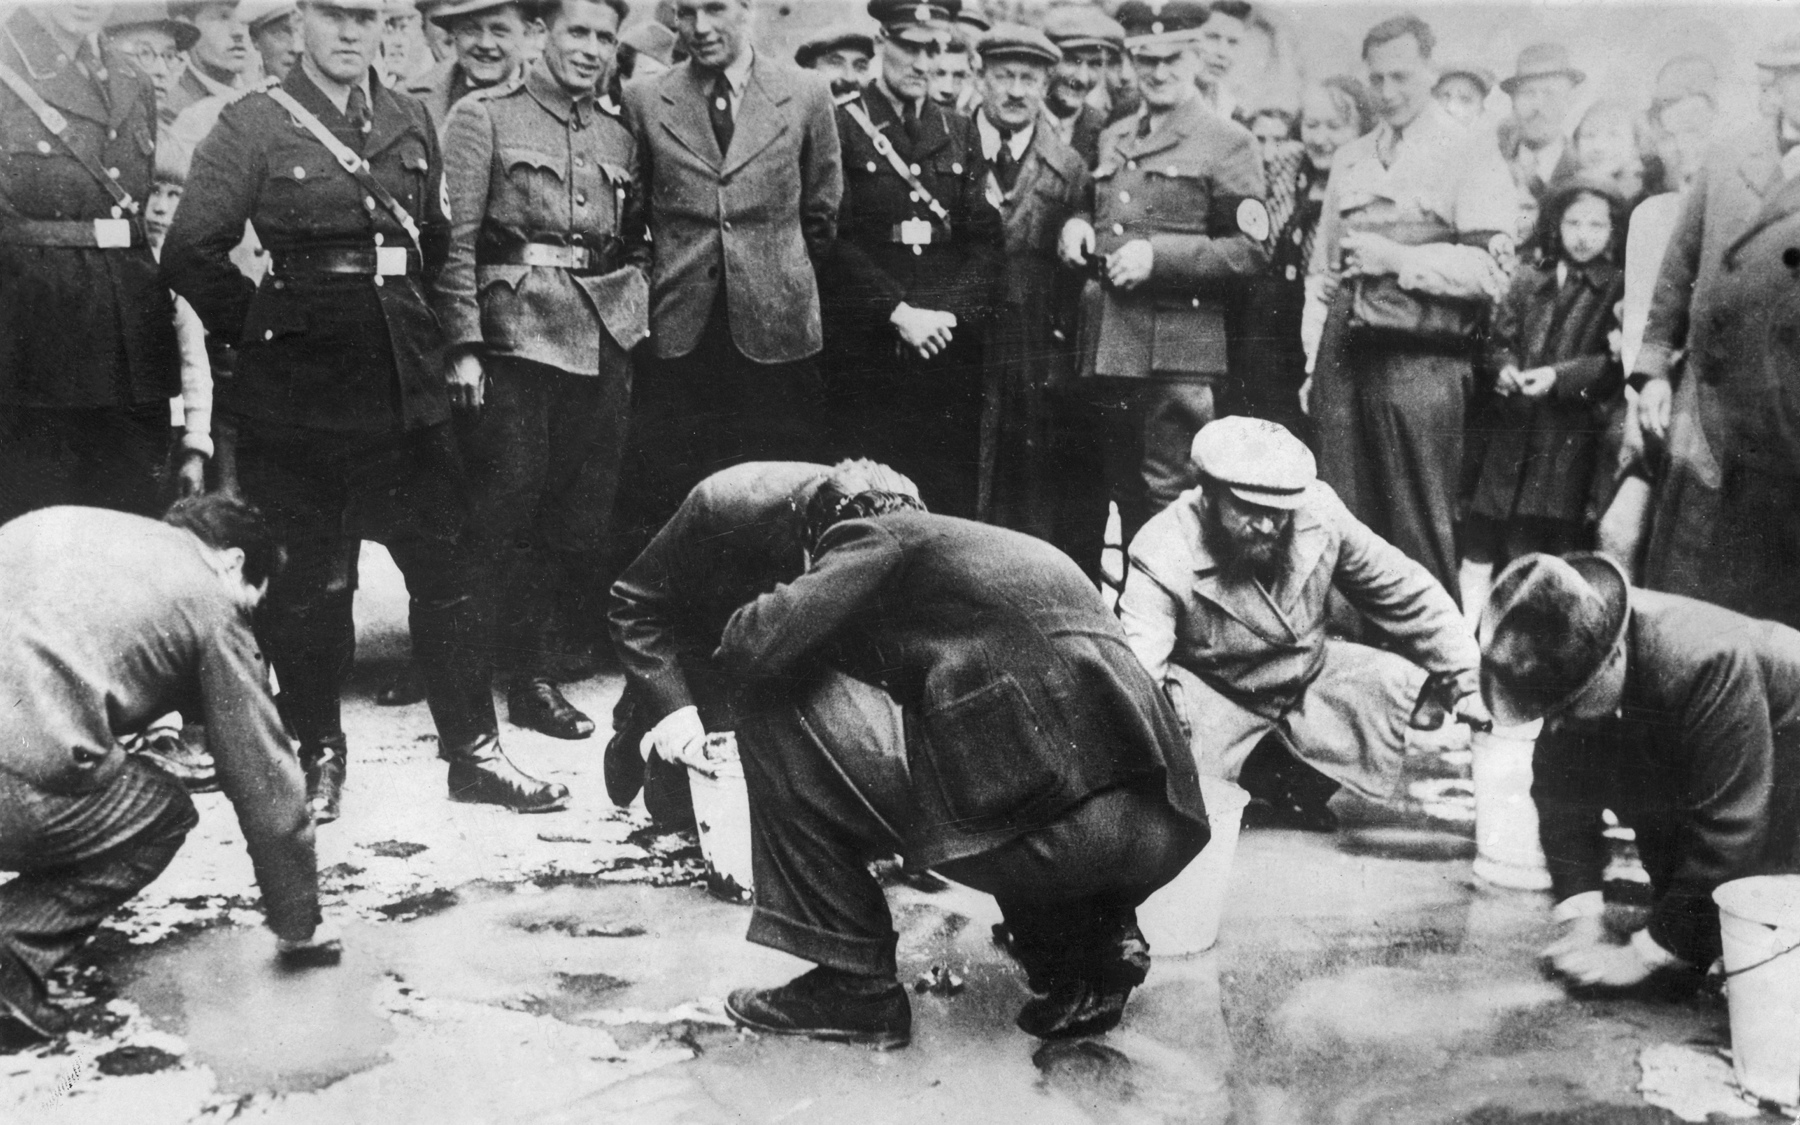 Oficerowie niemieccy i przechodnie obserwują grupę Żydów szorujących ulicę w Wiedniu, 1938 r.